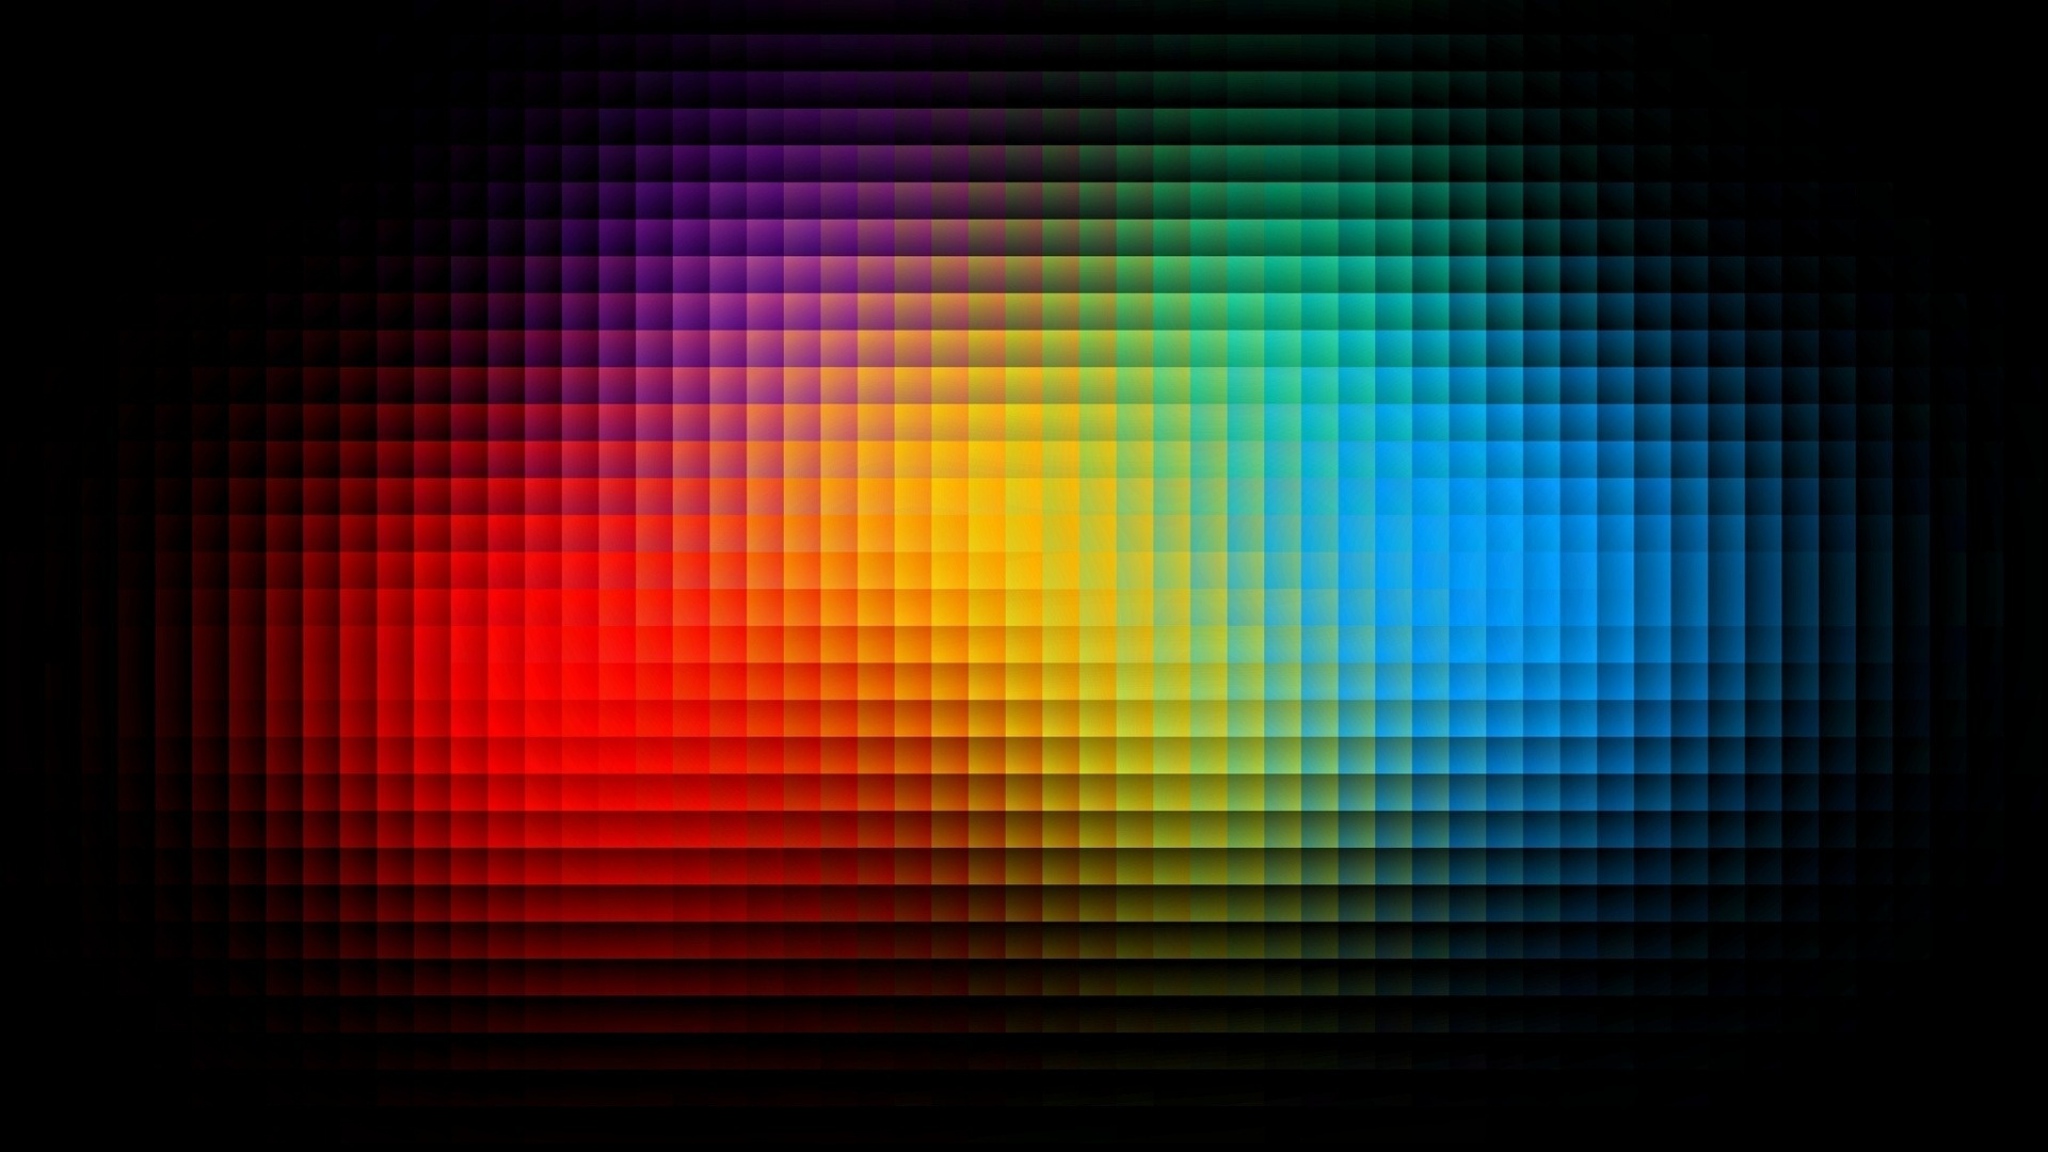 2048 x 1152 pixels